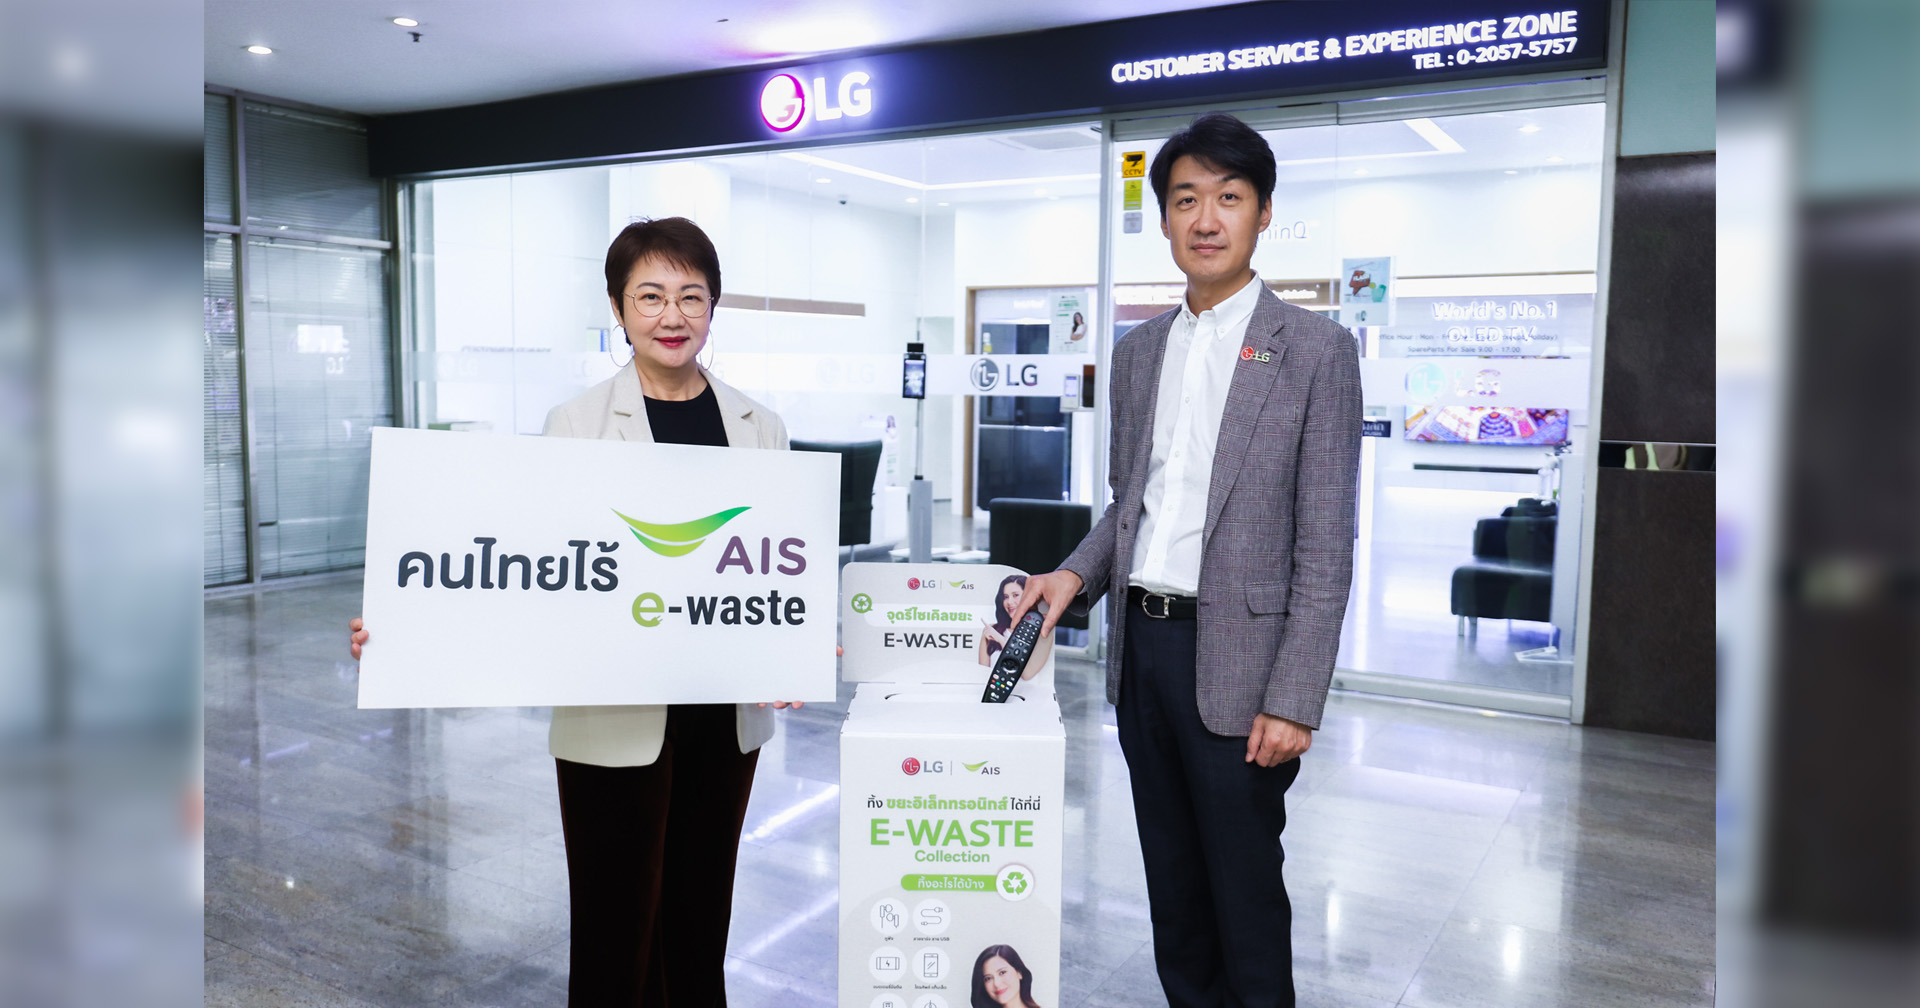 ‘แอลจี’ เข้าร่วมเป็นพันธมิตรกับเอไอเอส ในโครงการ ‘คนไทยไร้ E-Waste’ ตั้งจุดรับทิ้งขยะอิเล็กทรอนิกส์ 12 แห่งทั่วกรุงเทพฯ